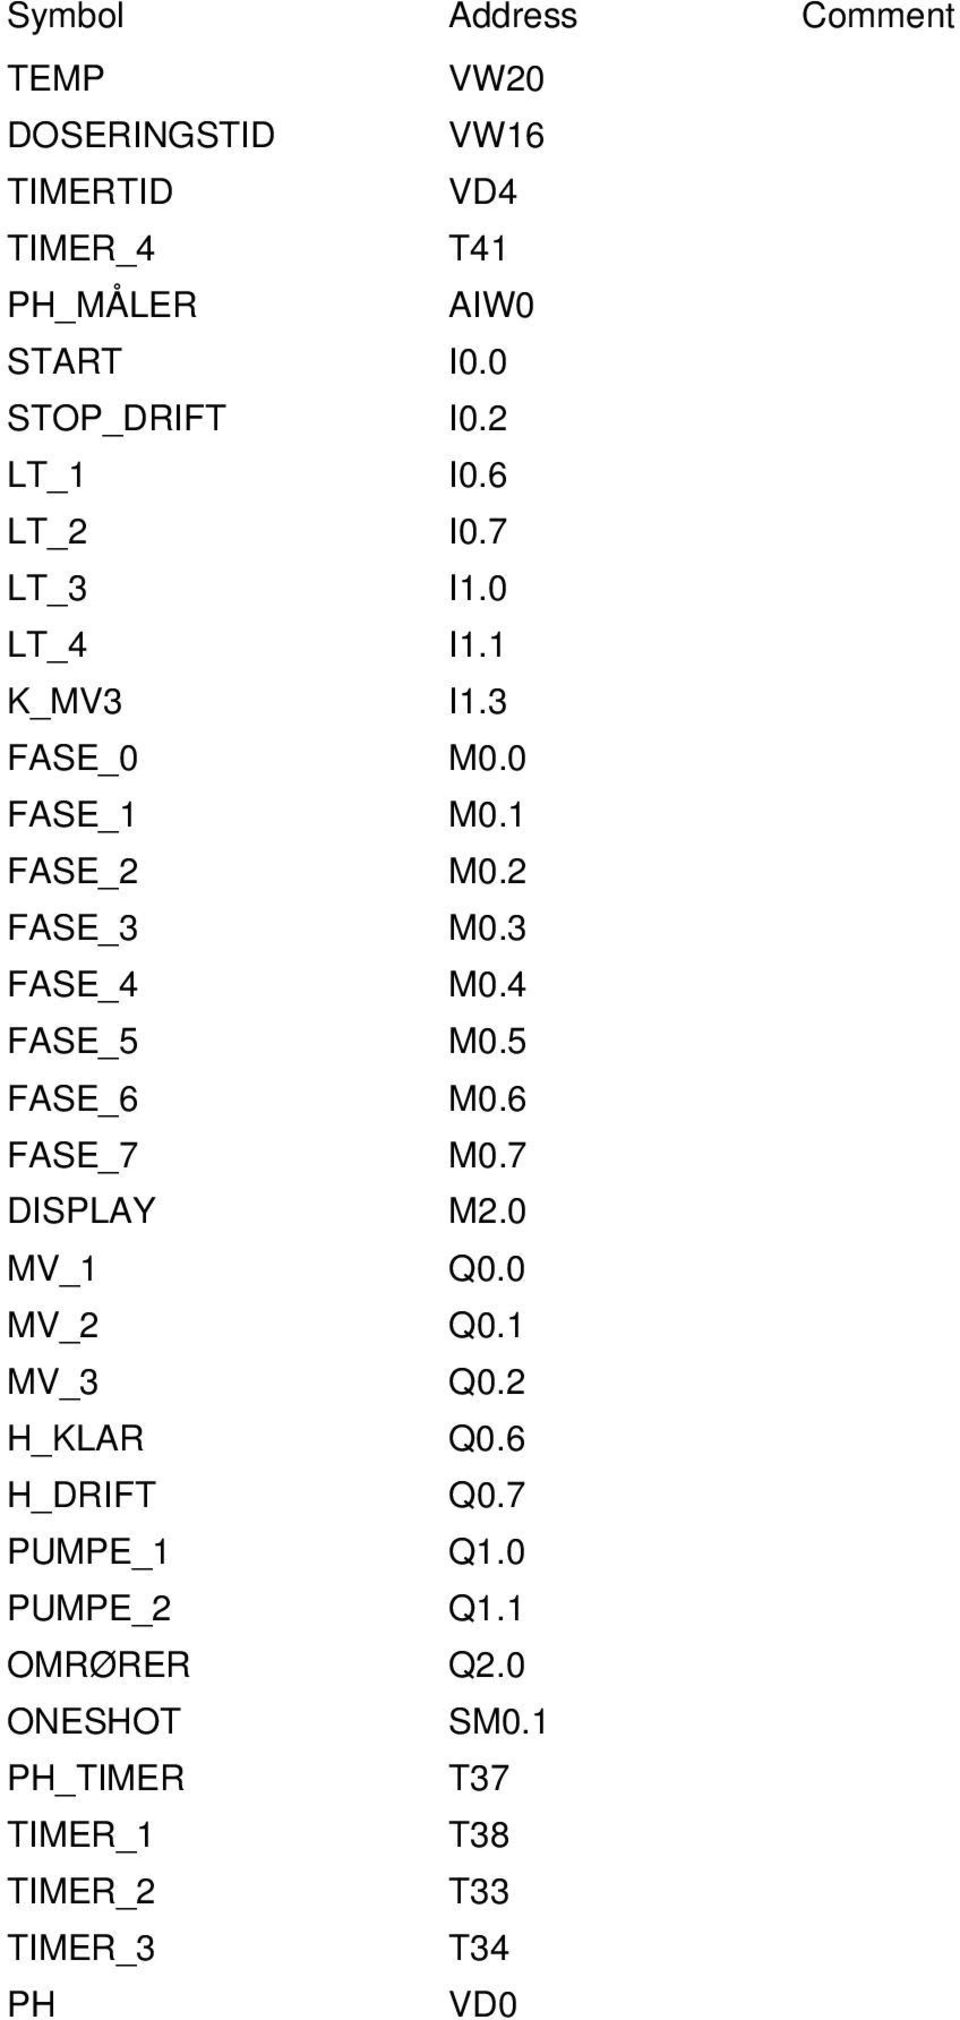 5 FASE_6 M0.6 FASE_7 M0.7 DISPLAY M2.0 MV_1 Q0.0 MV_2 Q0.1 MV_3 Q0.2 H_KLAR Q0.6 H_DRIFT Q0.